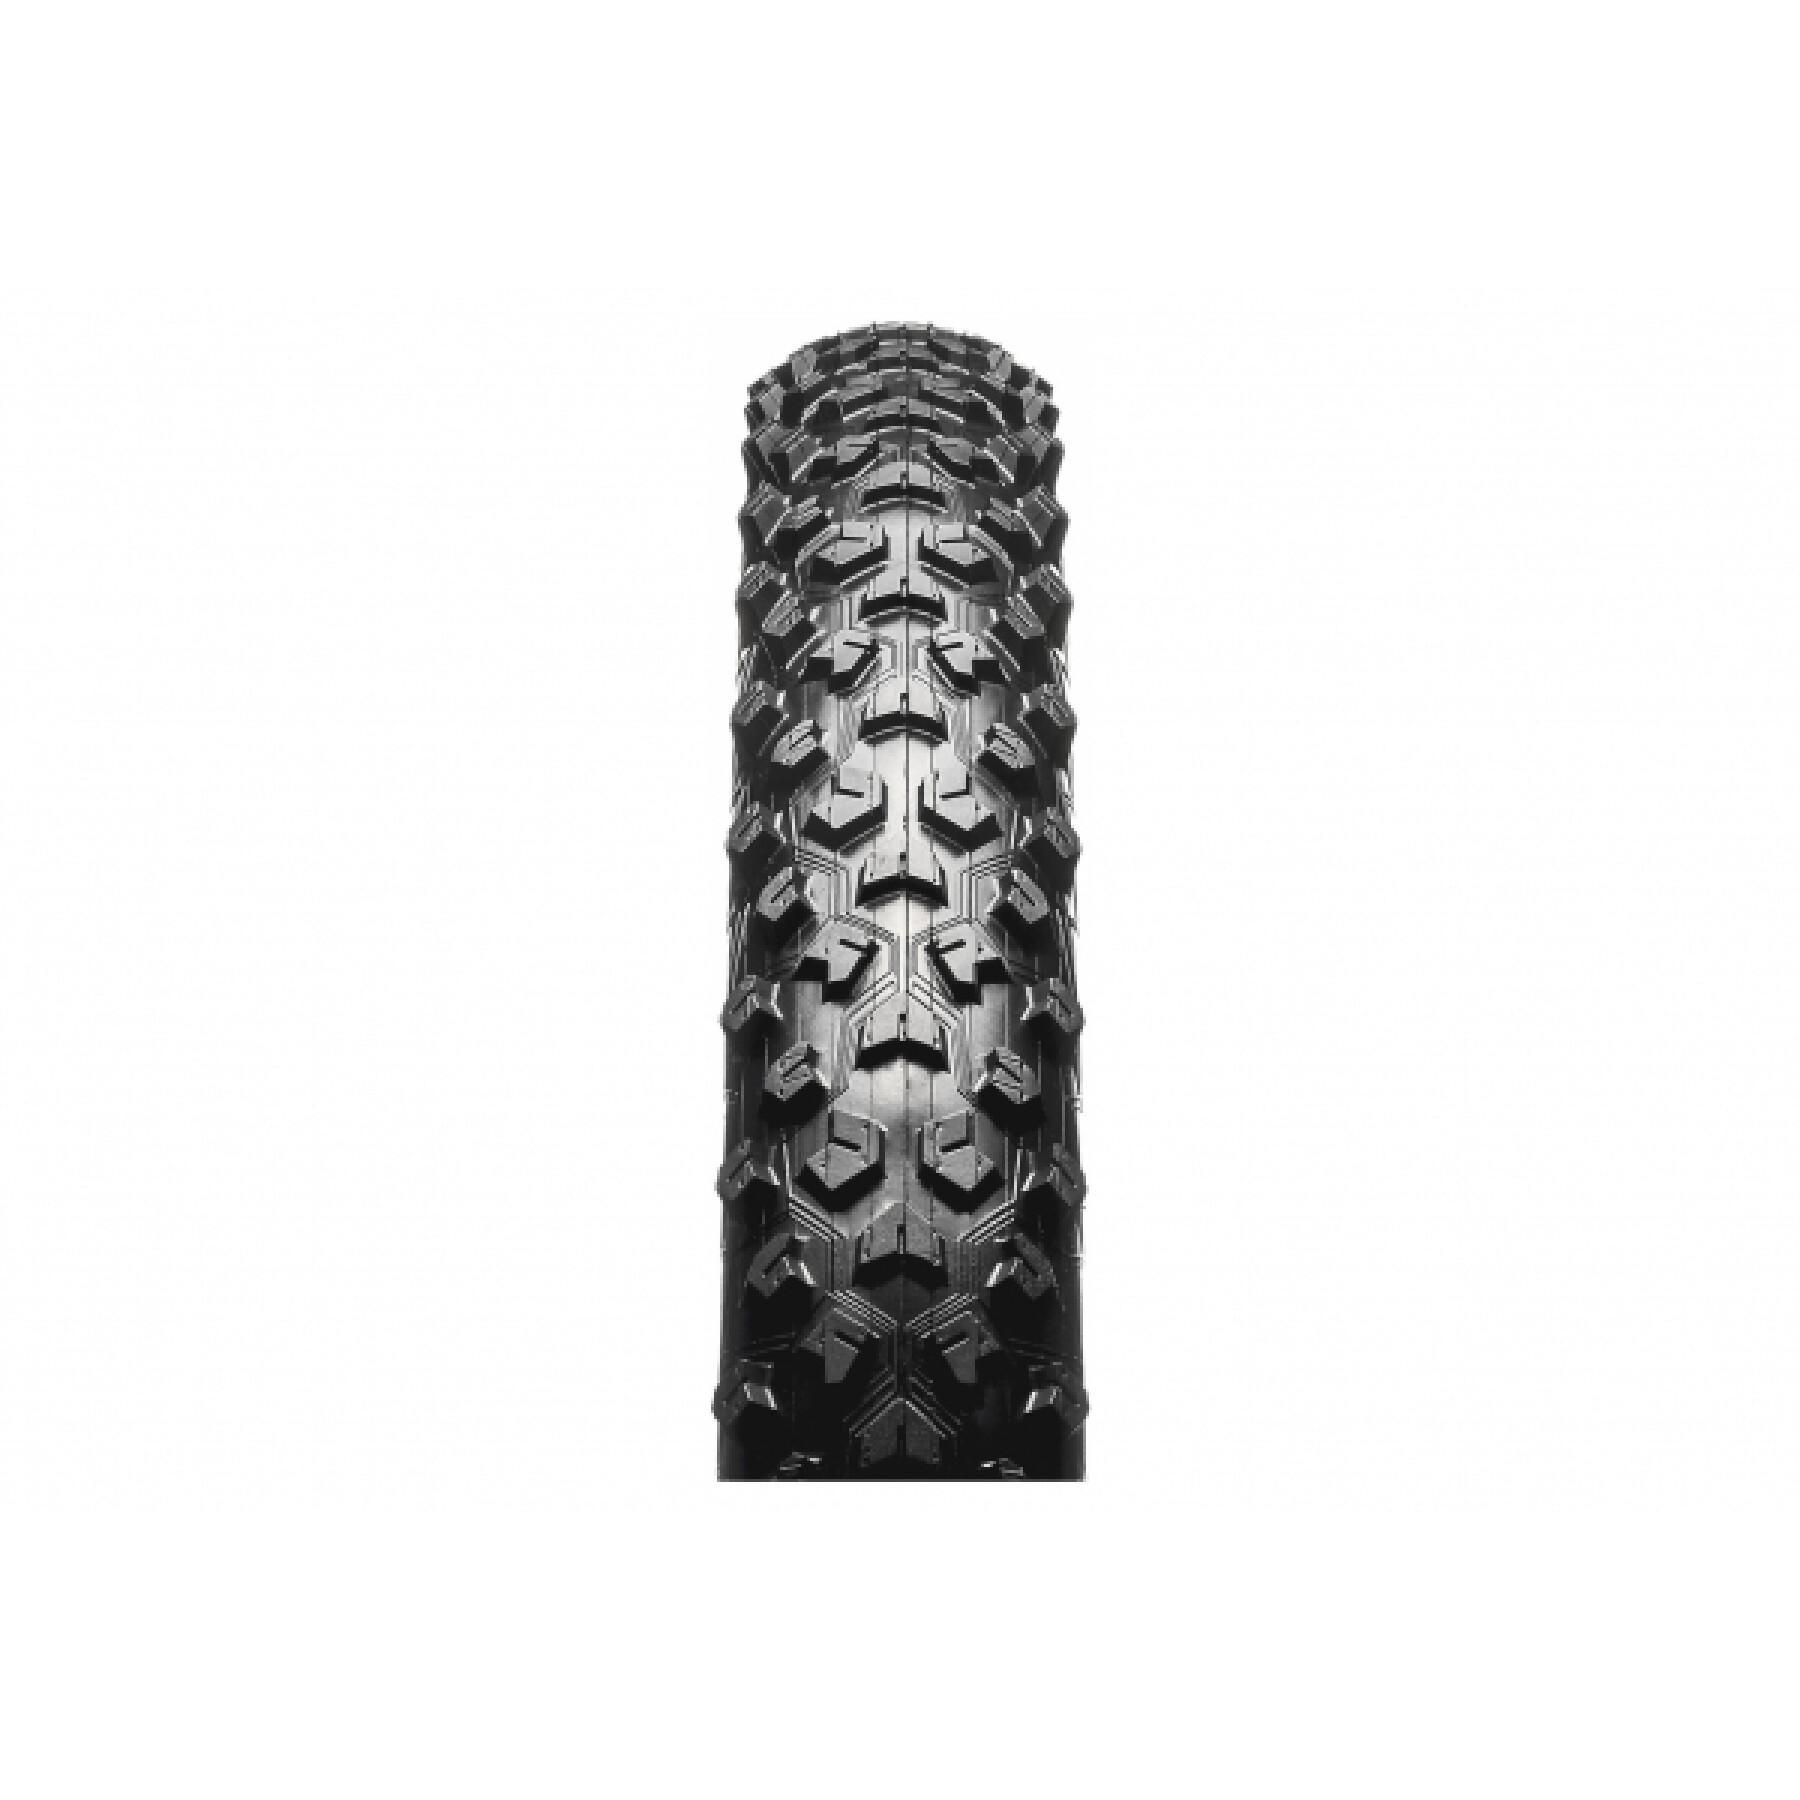 Neumático de bicicleta de montaña Hutchinson taipan TS tubetype-tubeless ready